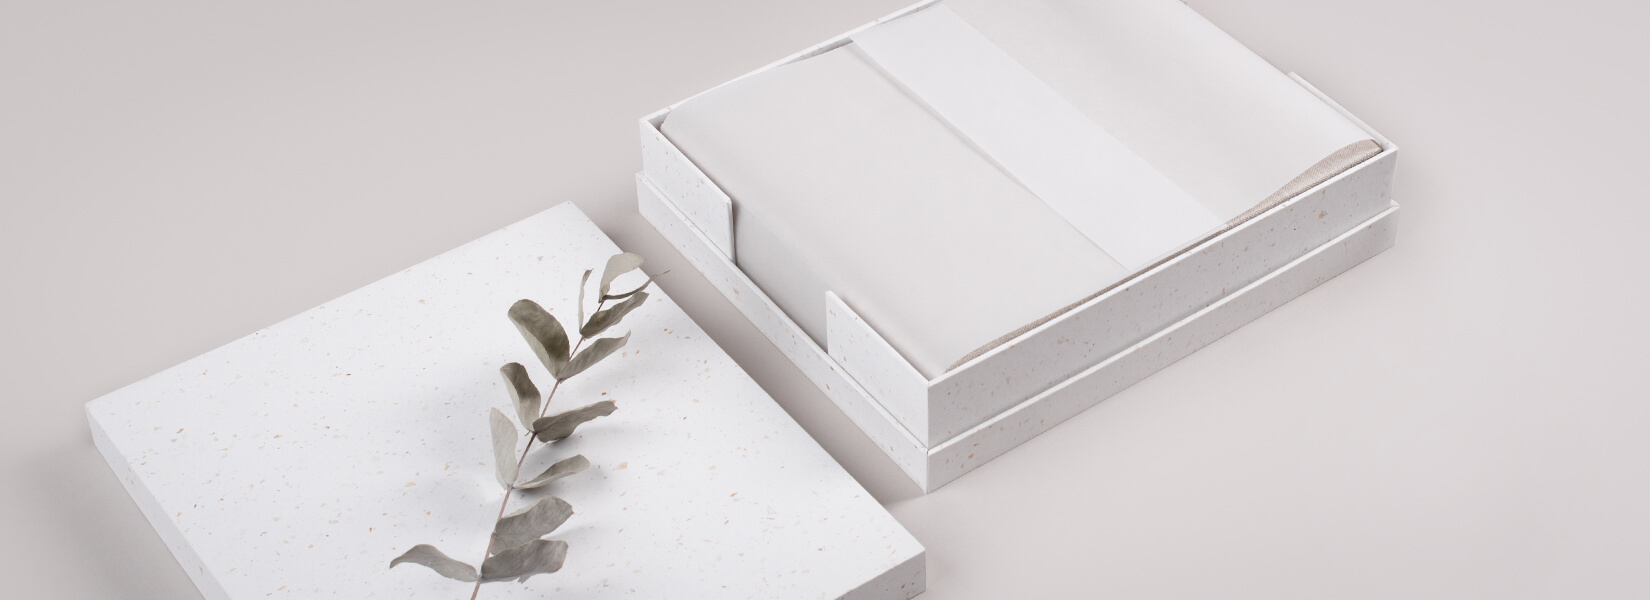 Öko-Geschenkschachtel mit weißem Pergamentpapier